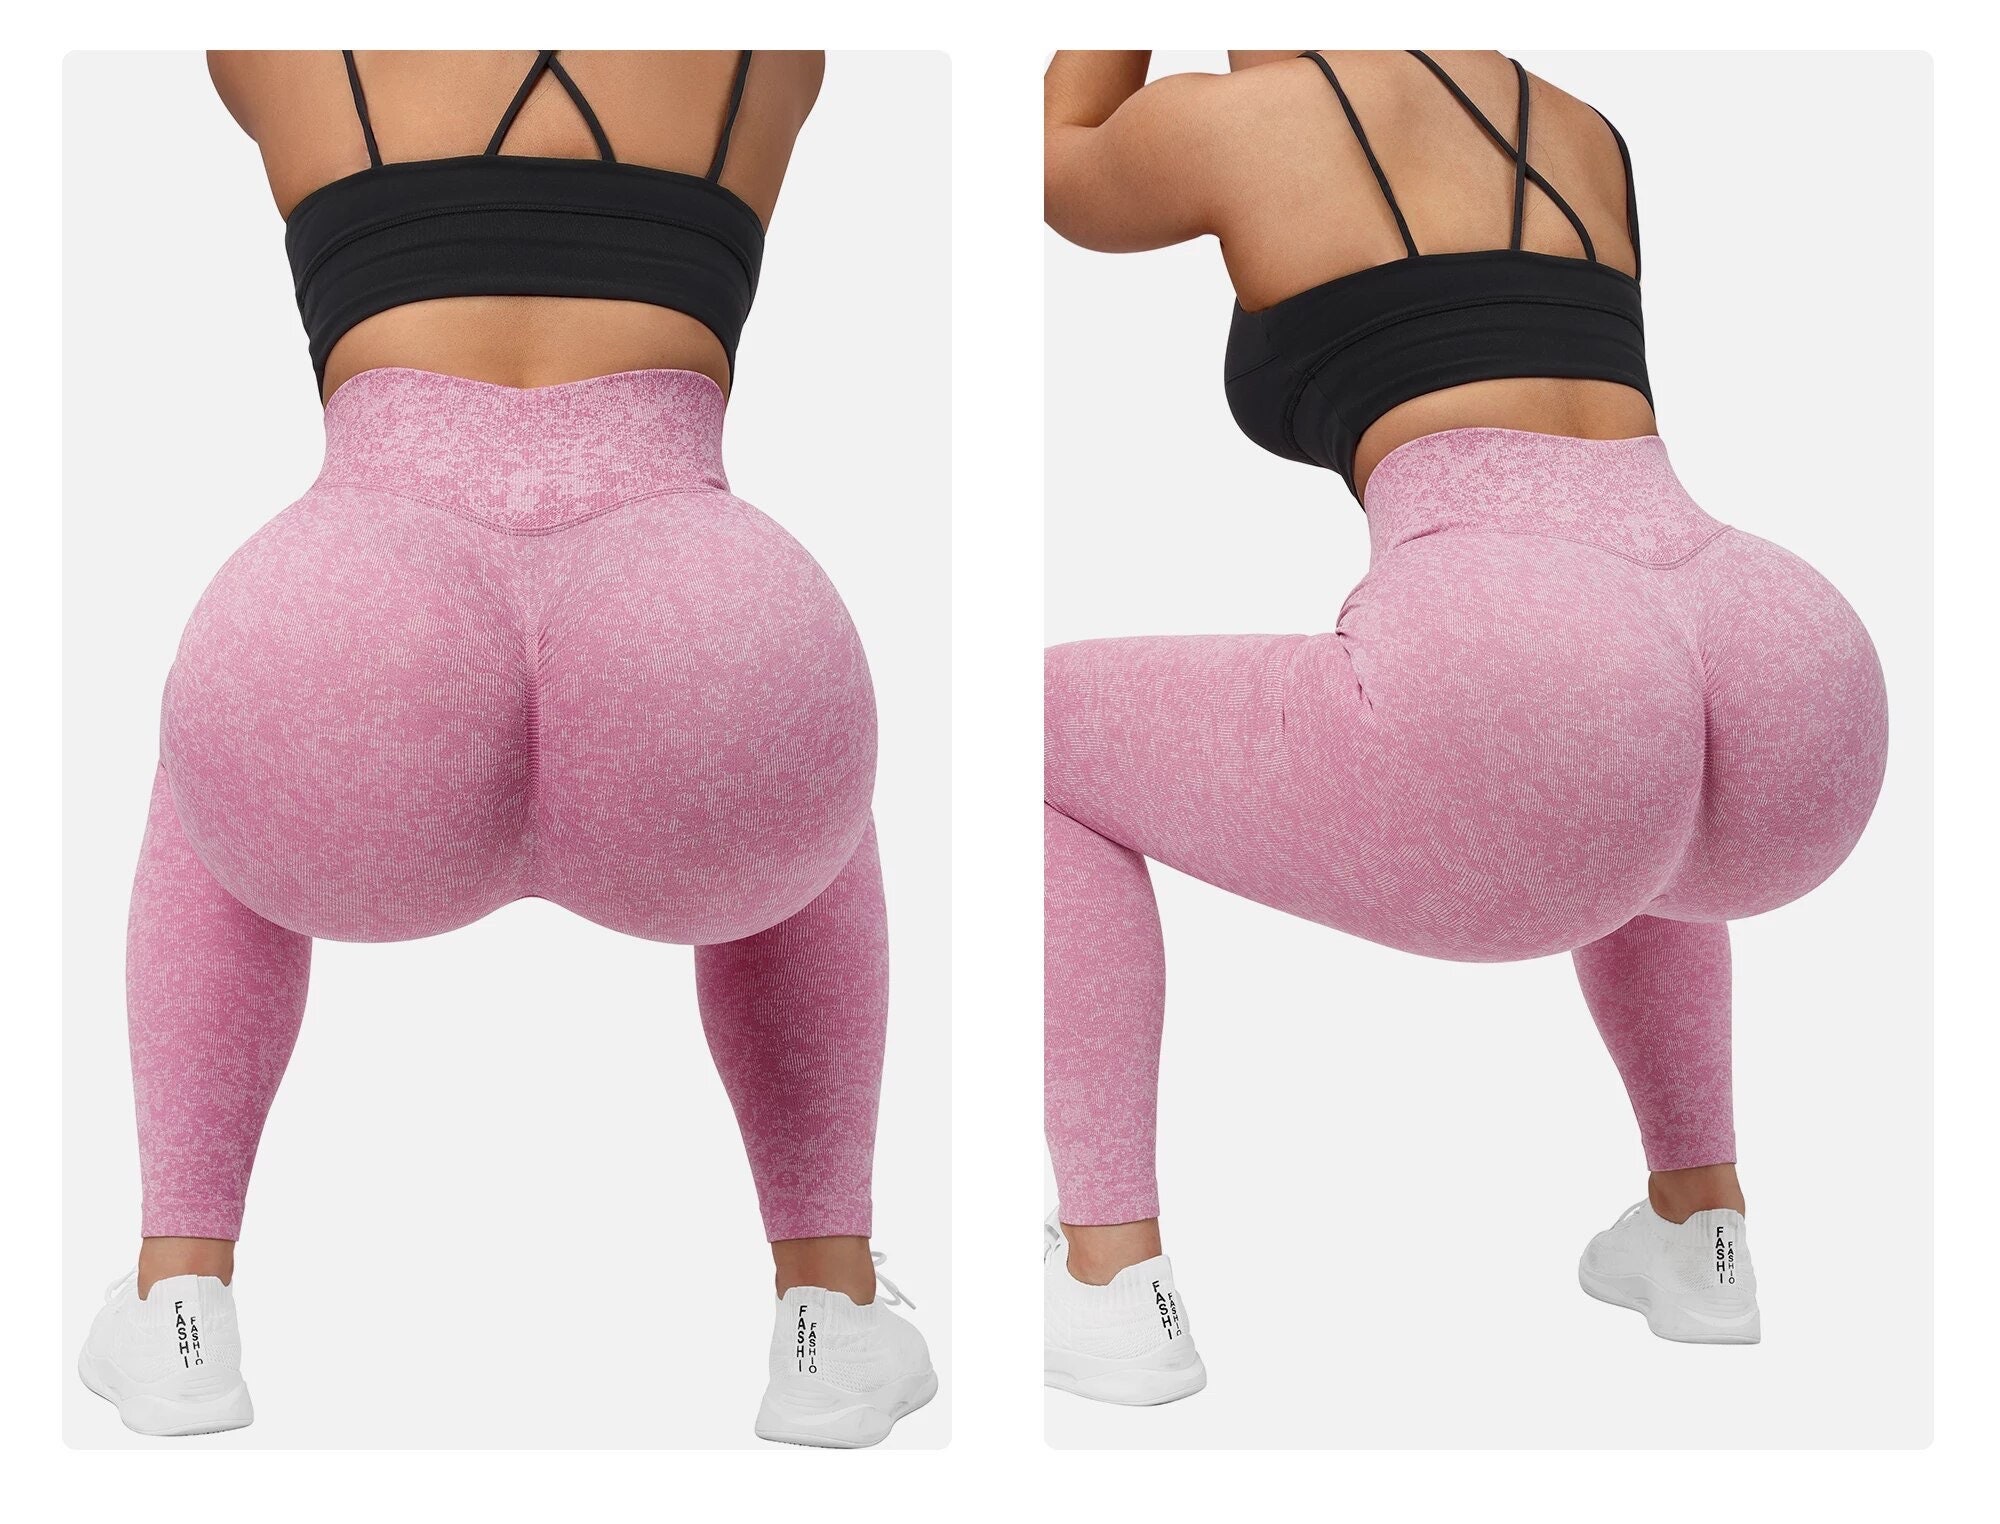 High Waisted Yoga Pants for Women Butt Lift Ruched Scrunch Butt